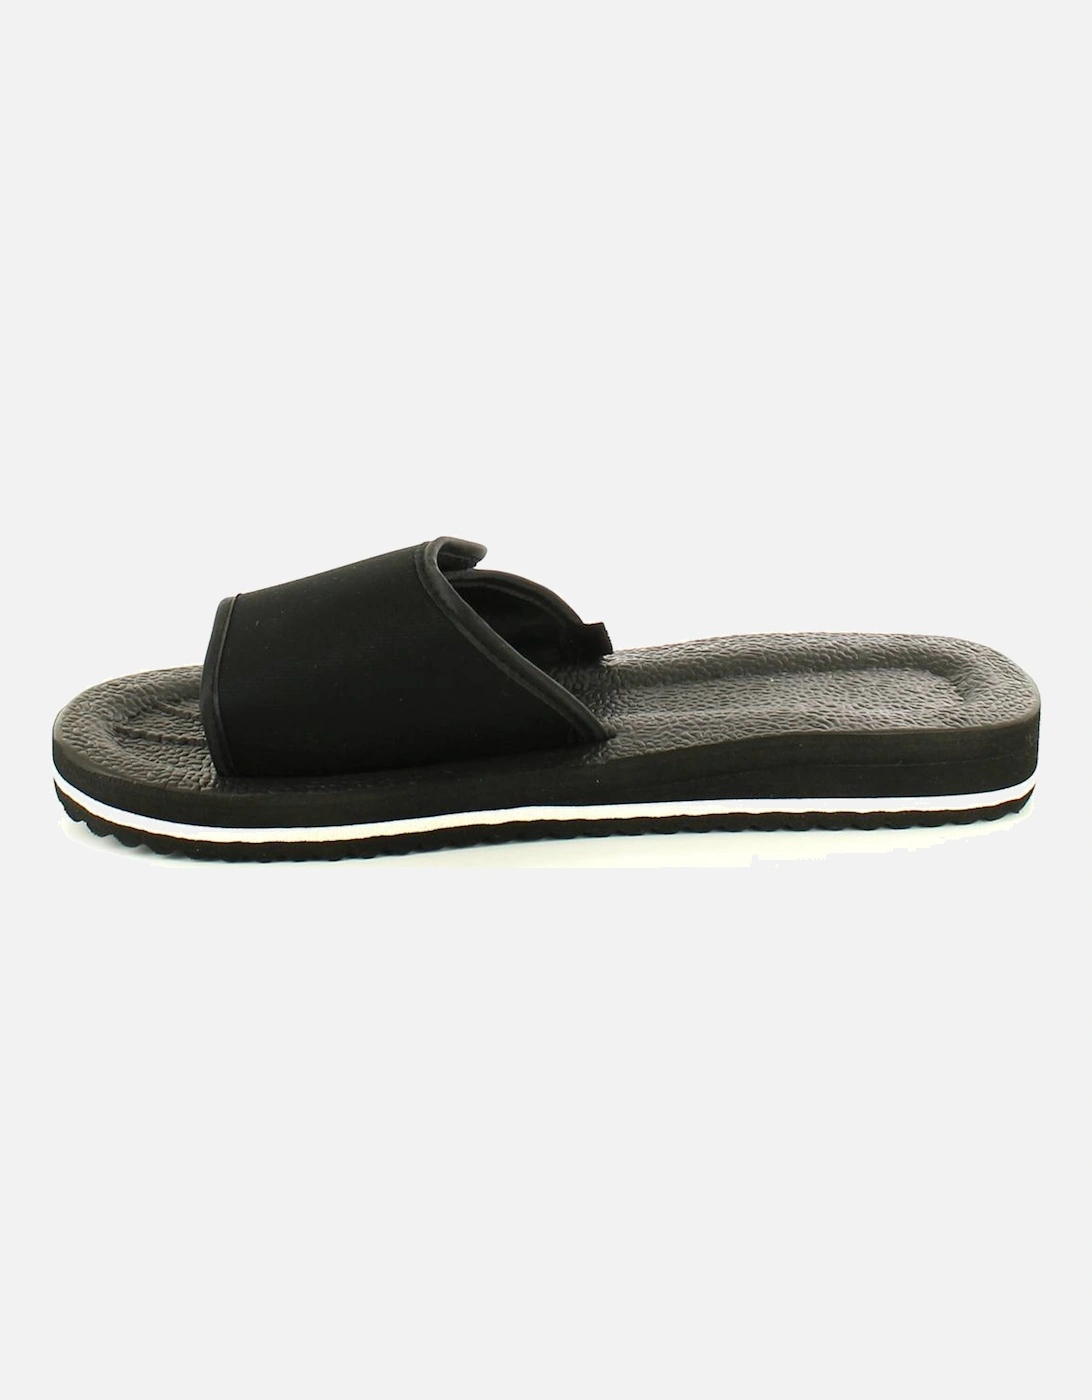 Mens Sandals Mules Flip Flops Slip On black white UK Size